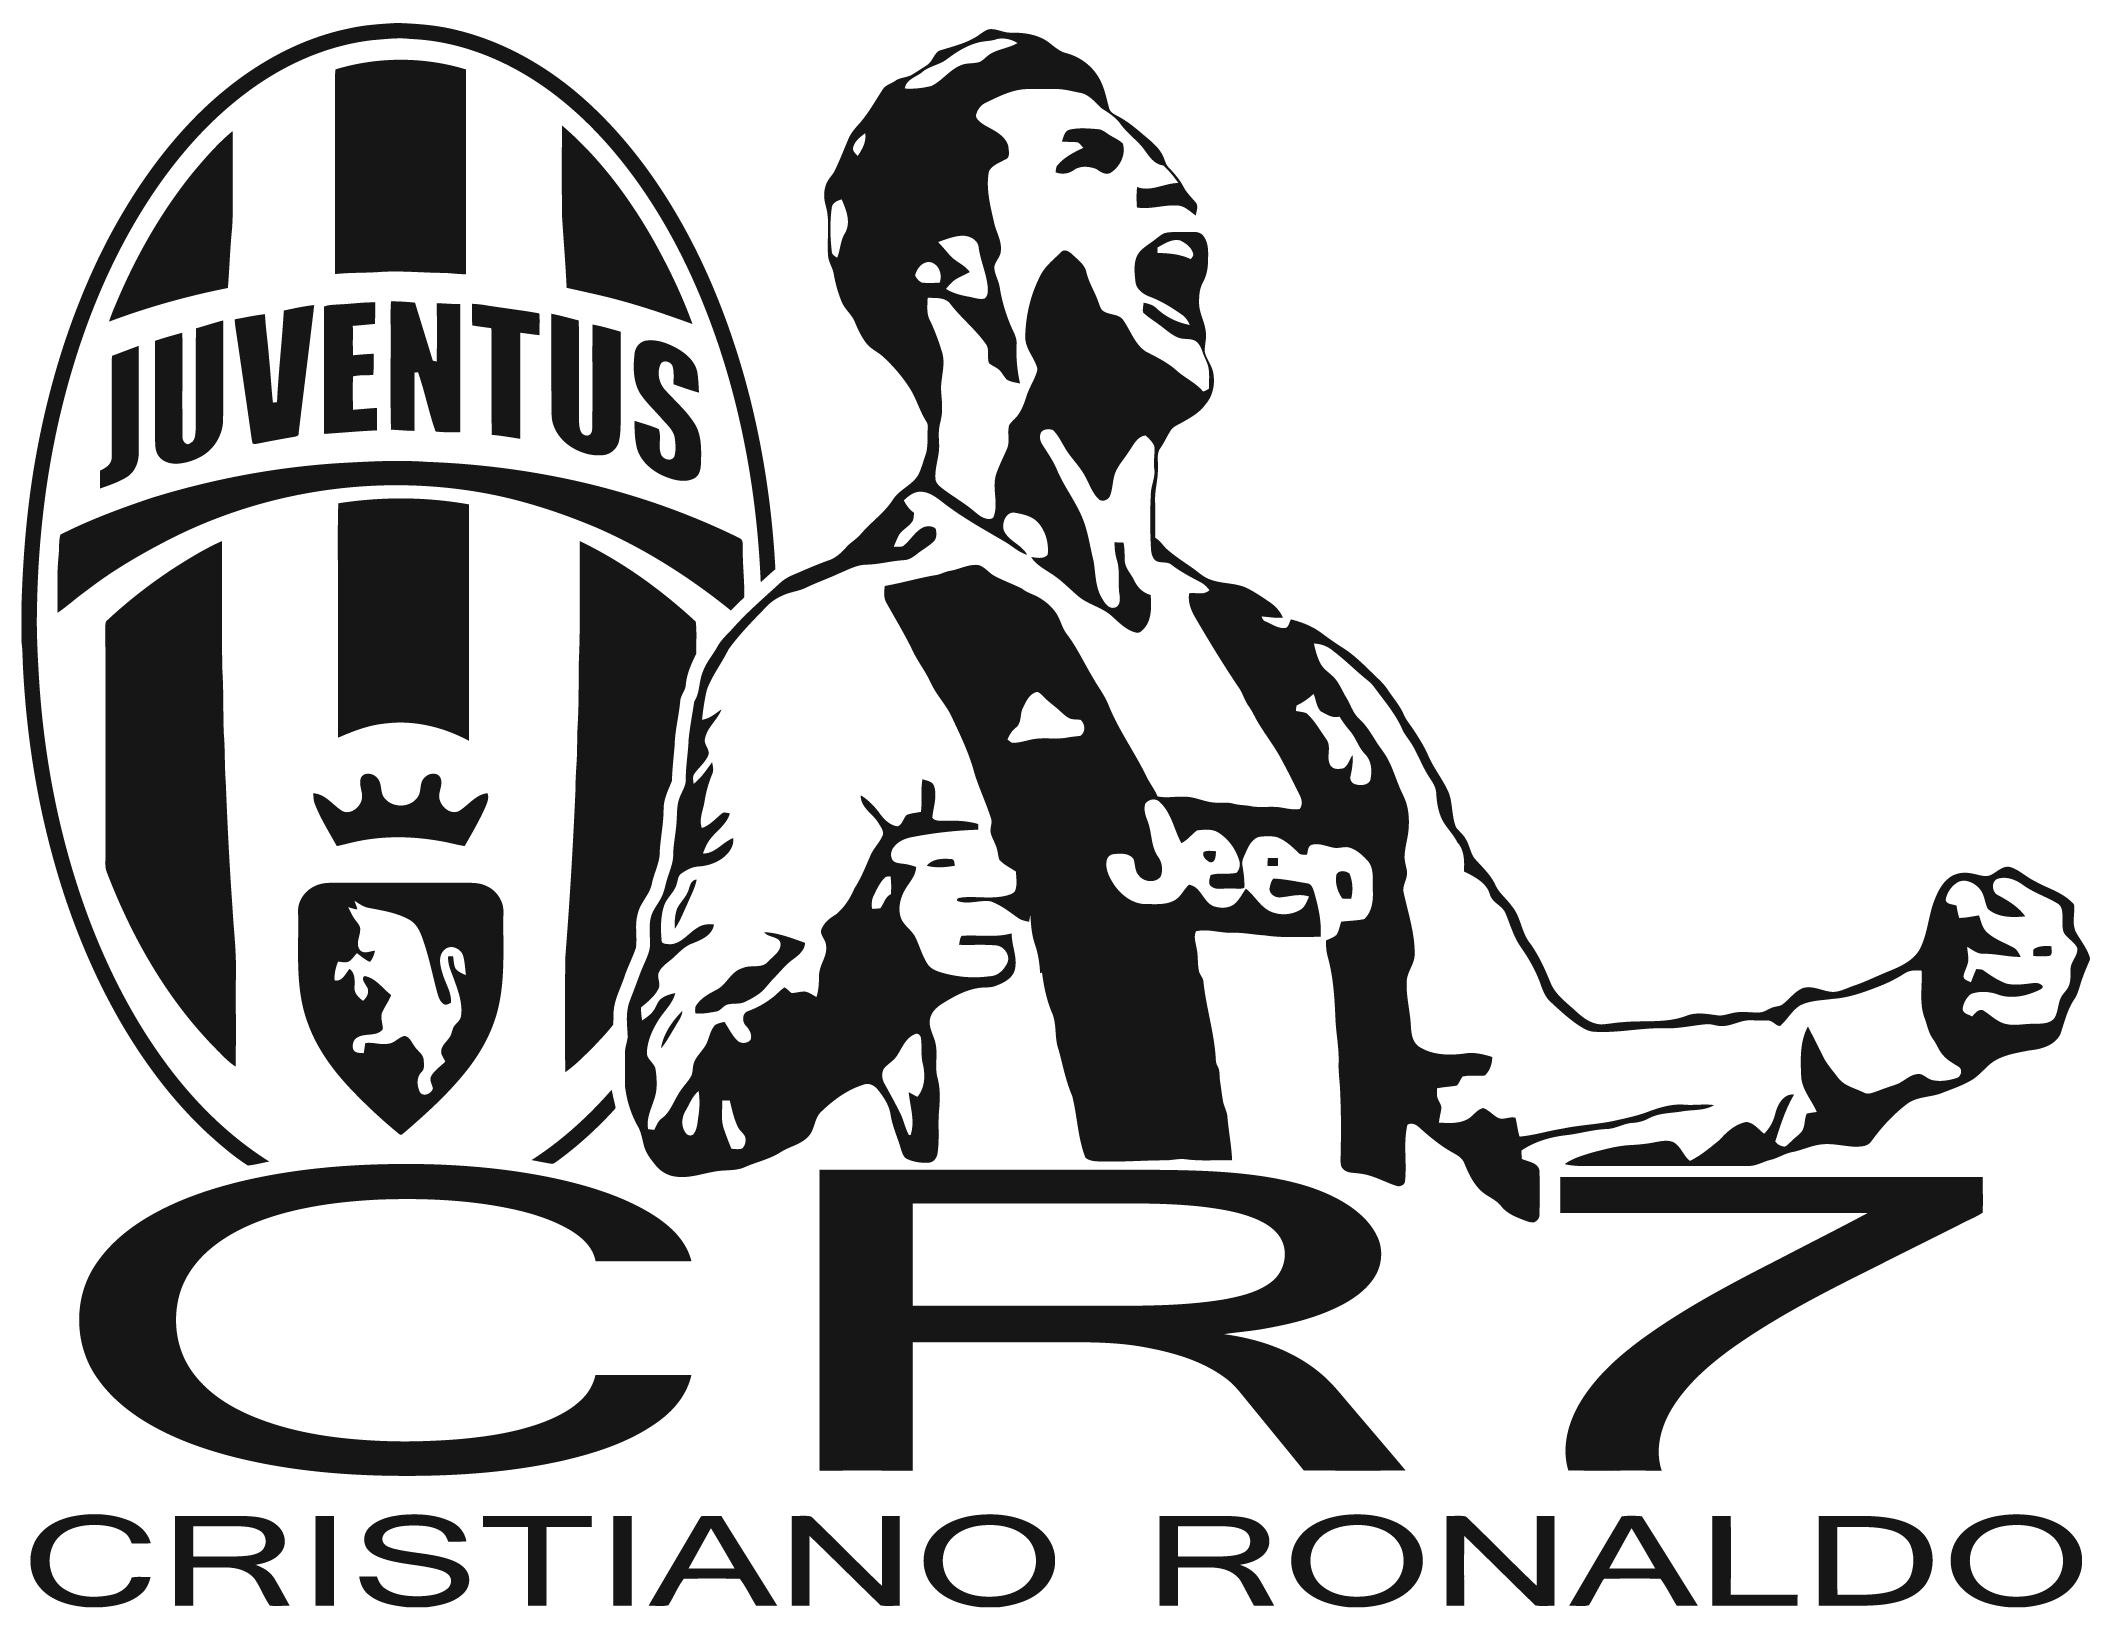 Galuisi Adesivo Sticker Cristiano Ronaldo CR7 Juve Juventus 2018 Nero Lucido, Piccolo 7,7 * 10 cm